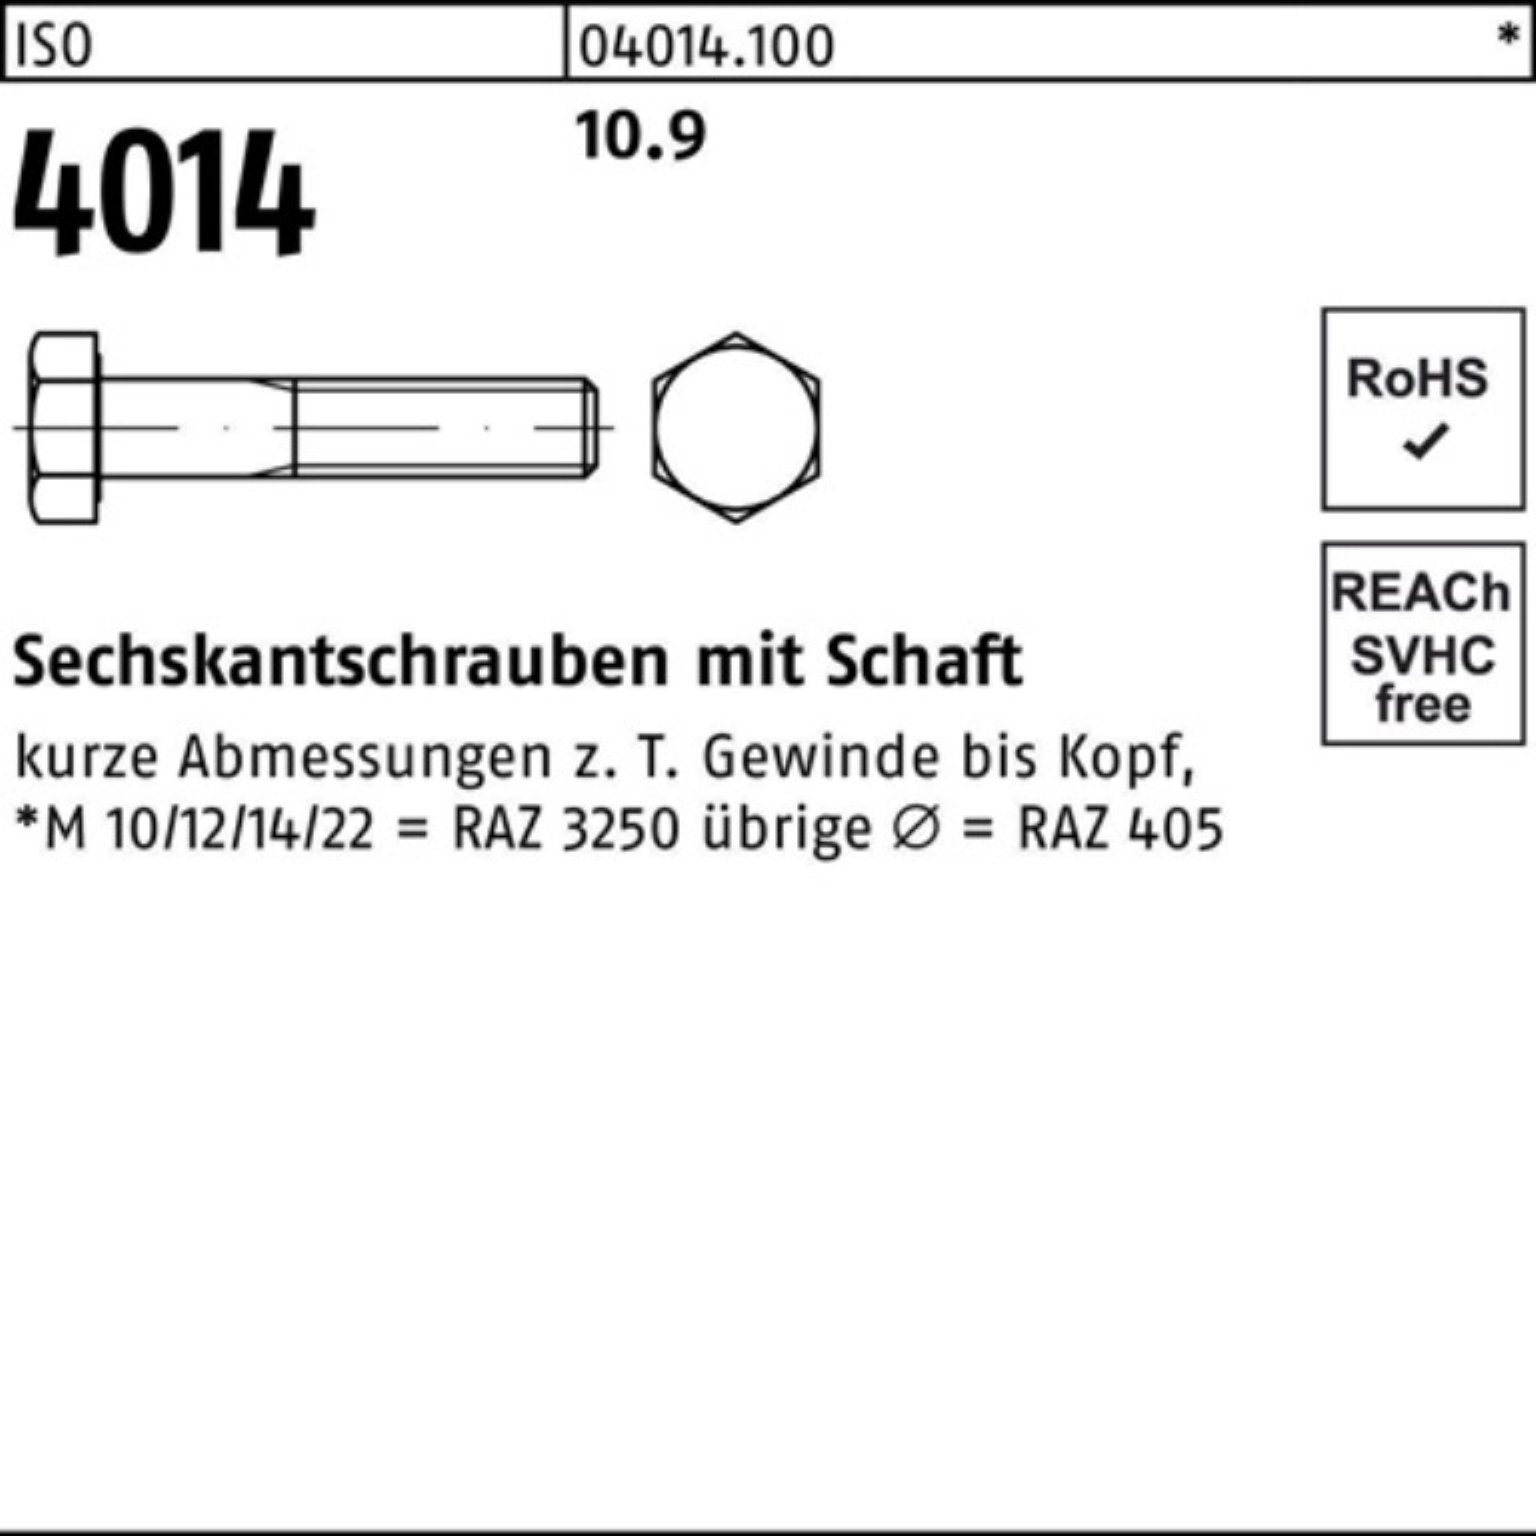 ISO Sechskantschraube 100er Sechskantschraube M20x 10.9 Bufab 1 Pack IS 190 Stück 4014 Schaft